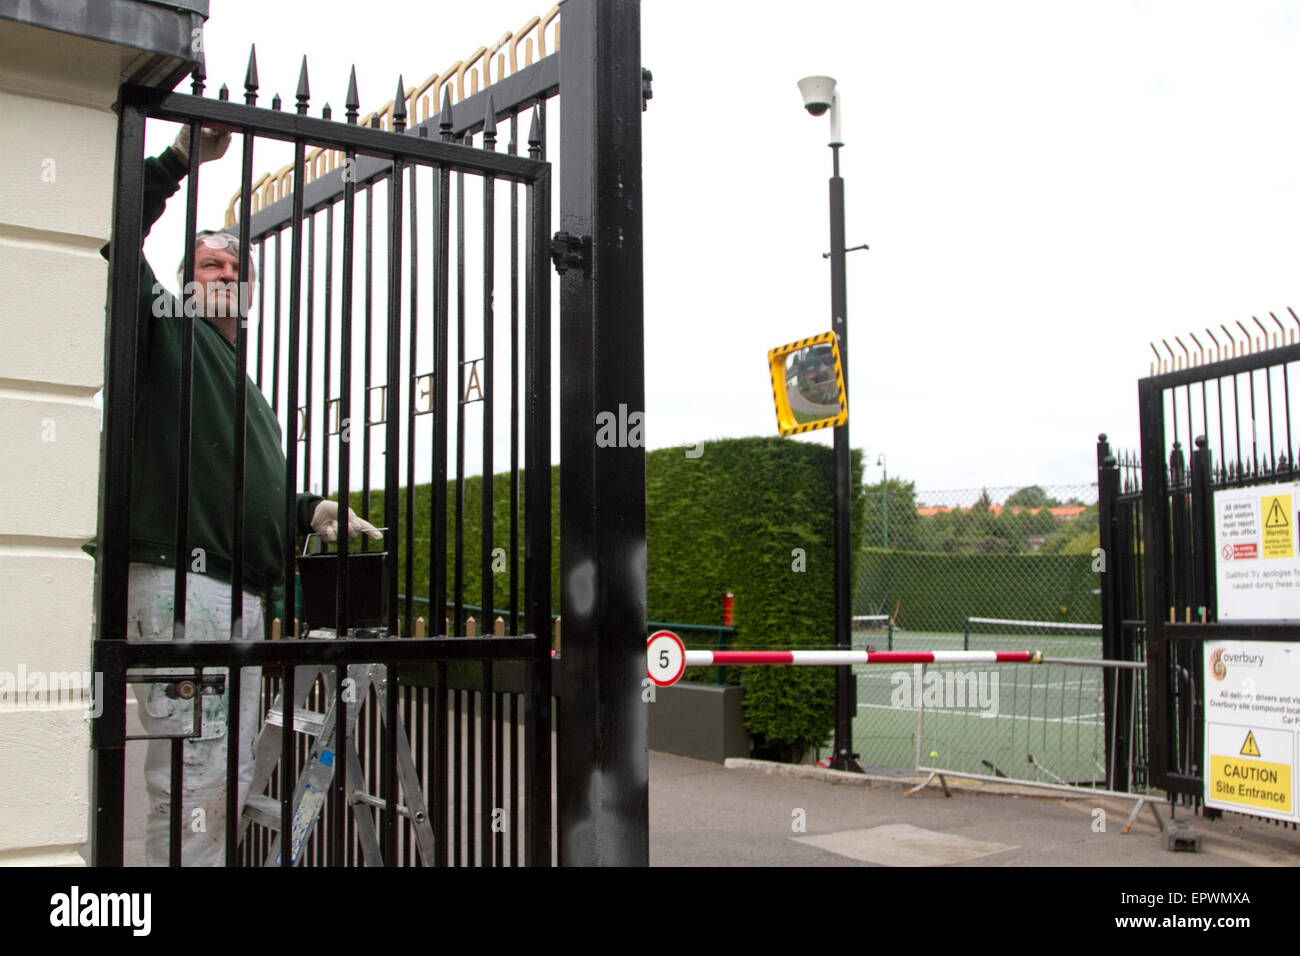 Wimbledon en Londres, Reino Unido. 22 de mayo de 2015. Obreros pintar las barandillas de las compuertas de la AELTC como preparación con cinco semanas hasta el inicio de los campeonatos de Wimbledon 2015 el 29 de junio de crédito: amer ghazzal/Alamy Live News Foto de stock